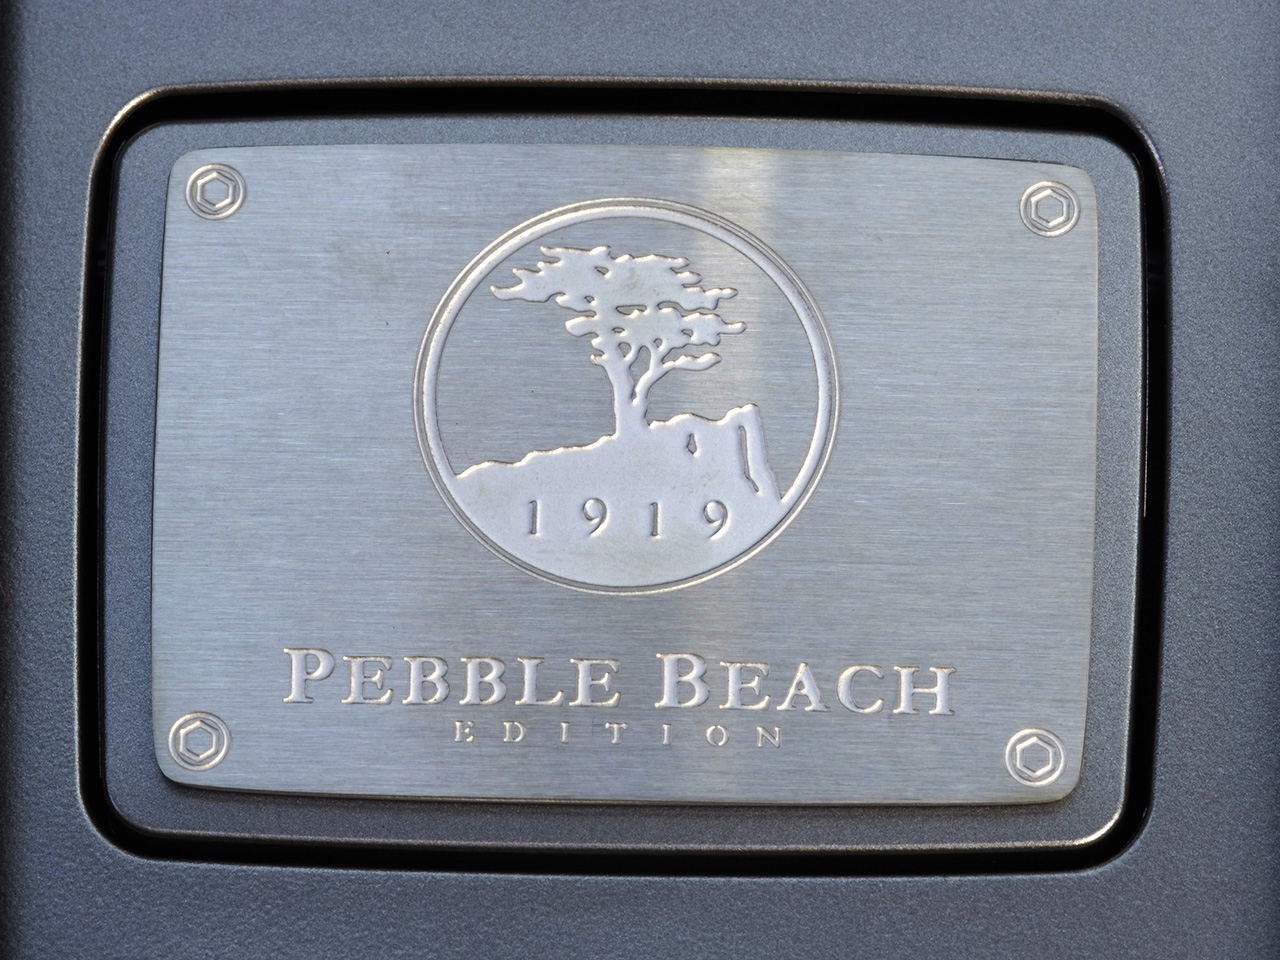 2007 Lexus SC Pebble Beach Edition Convertible